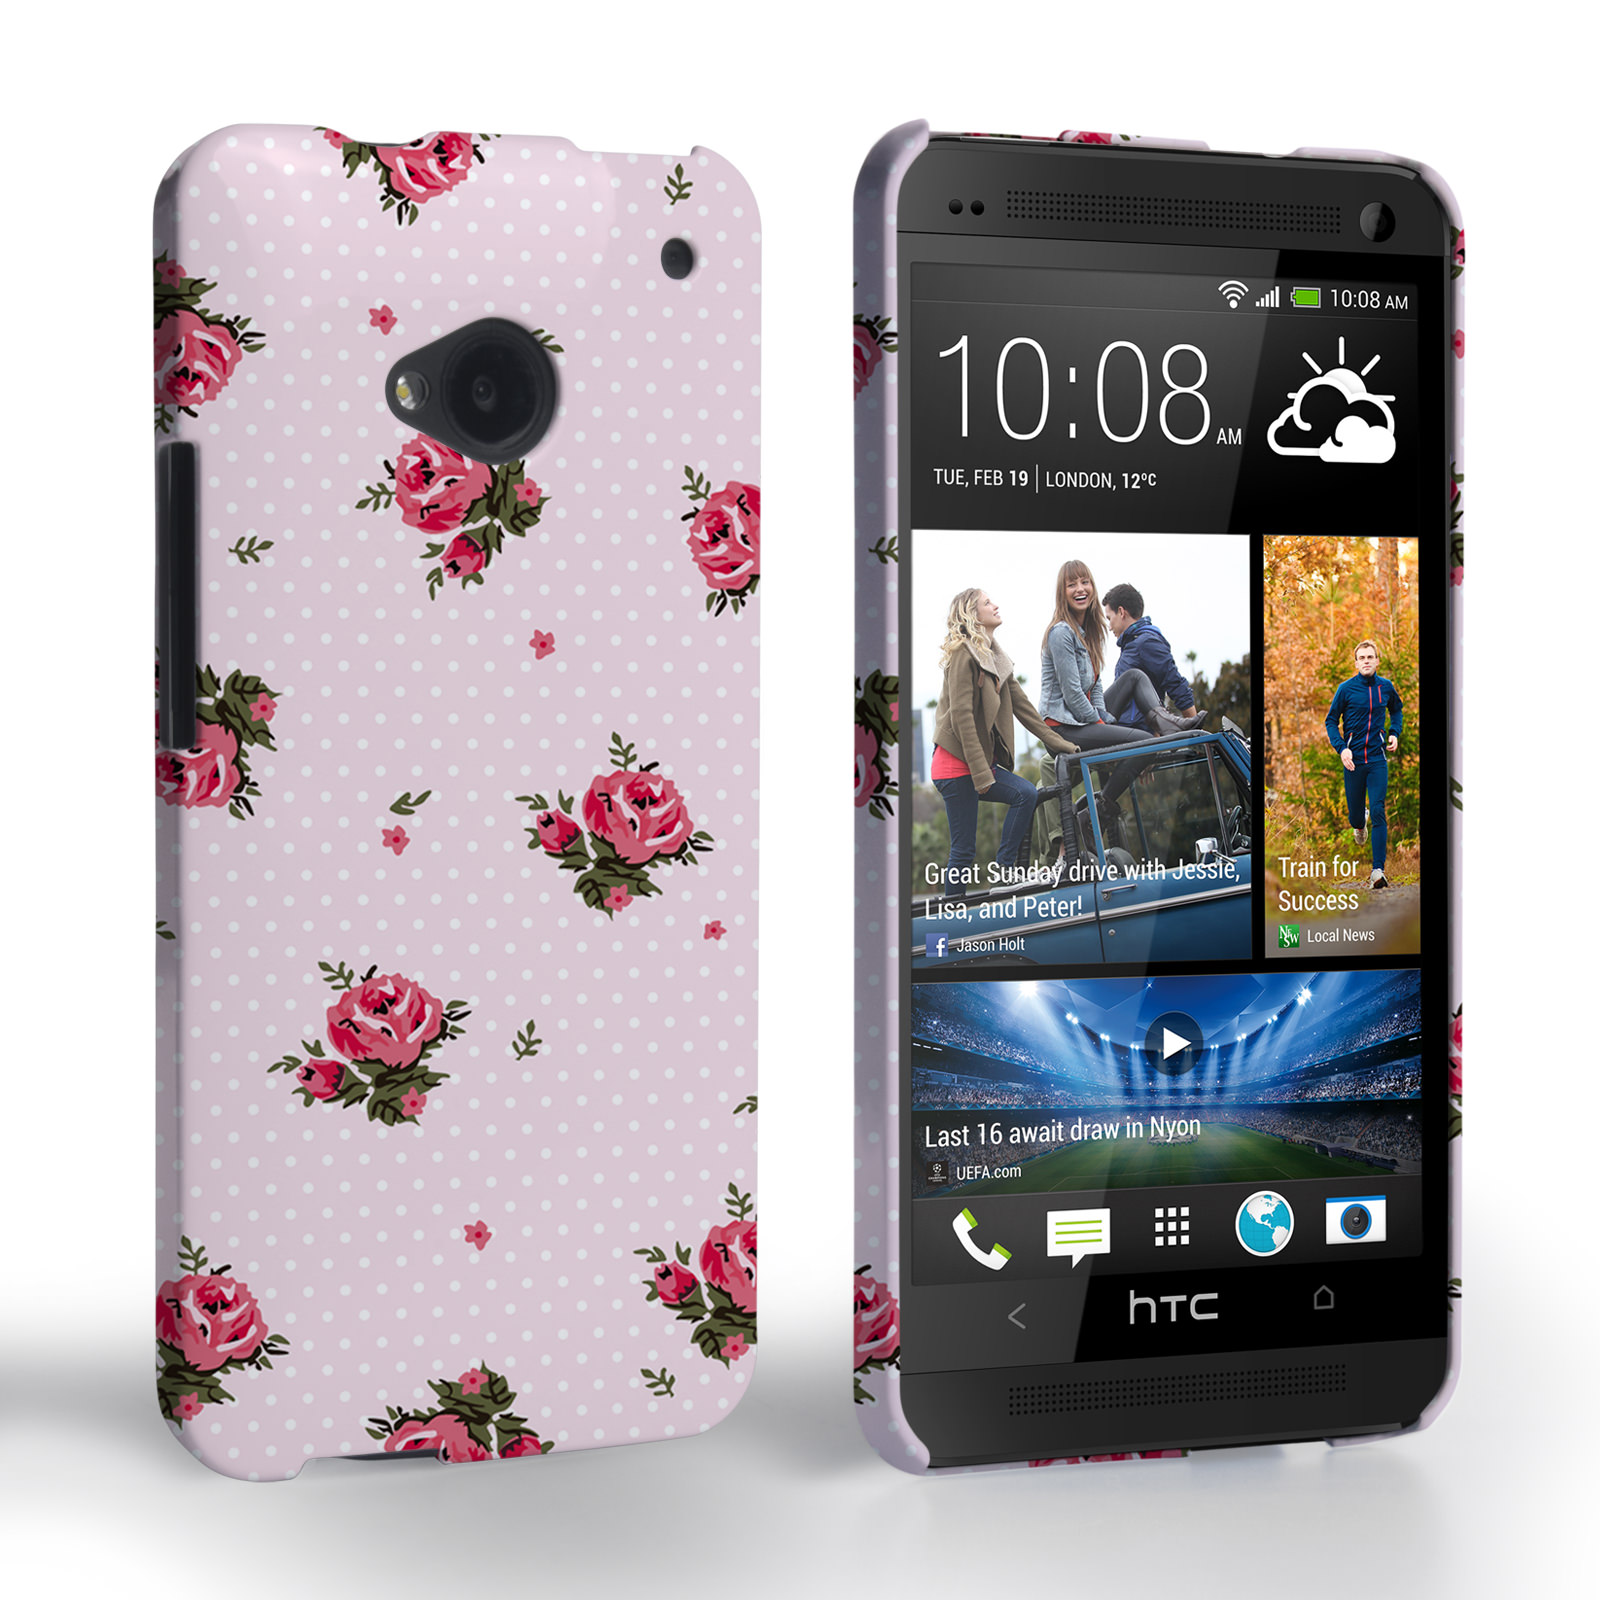 Caseflex HTC One Vintage Roses Polka Dot Wallpaper Hard Case – Pink